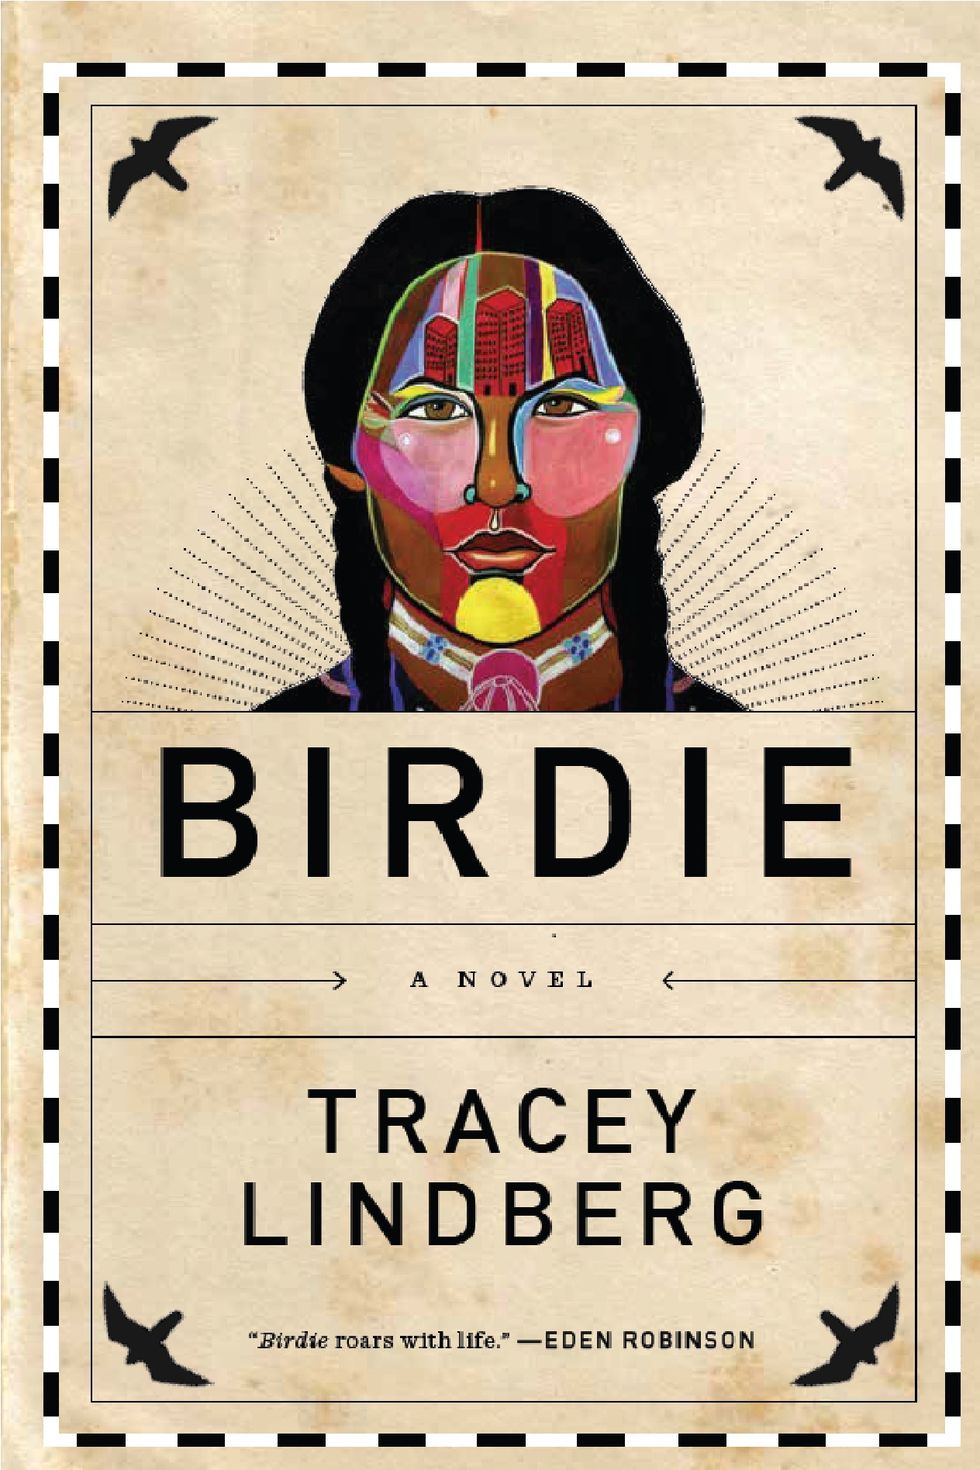 Lindberg's "Birdie" - Review